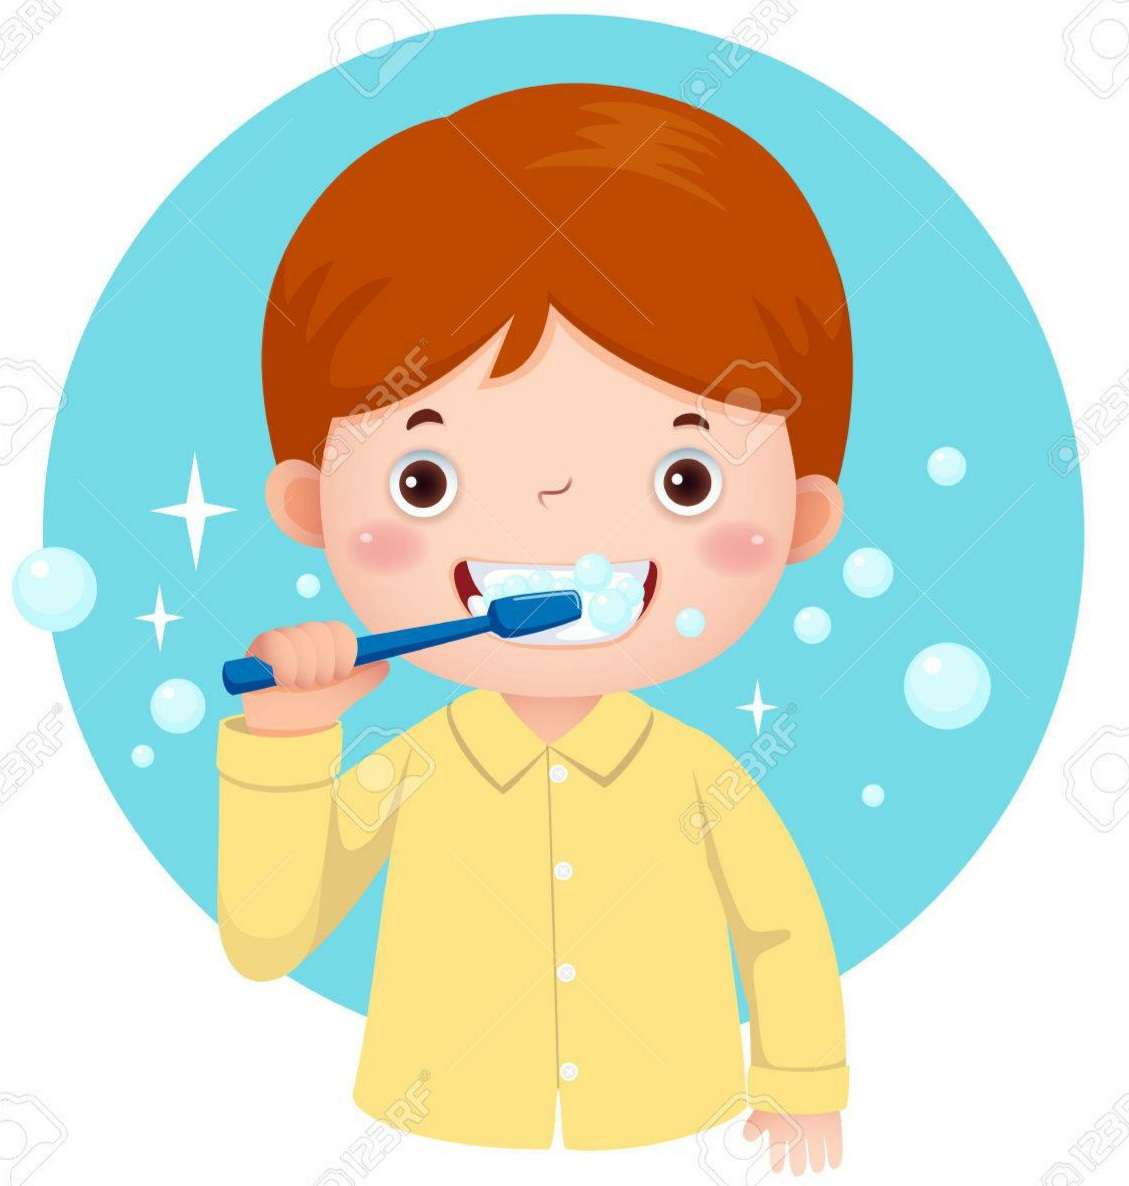 Se brosser les dents пазл онлайн из фото